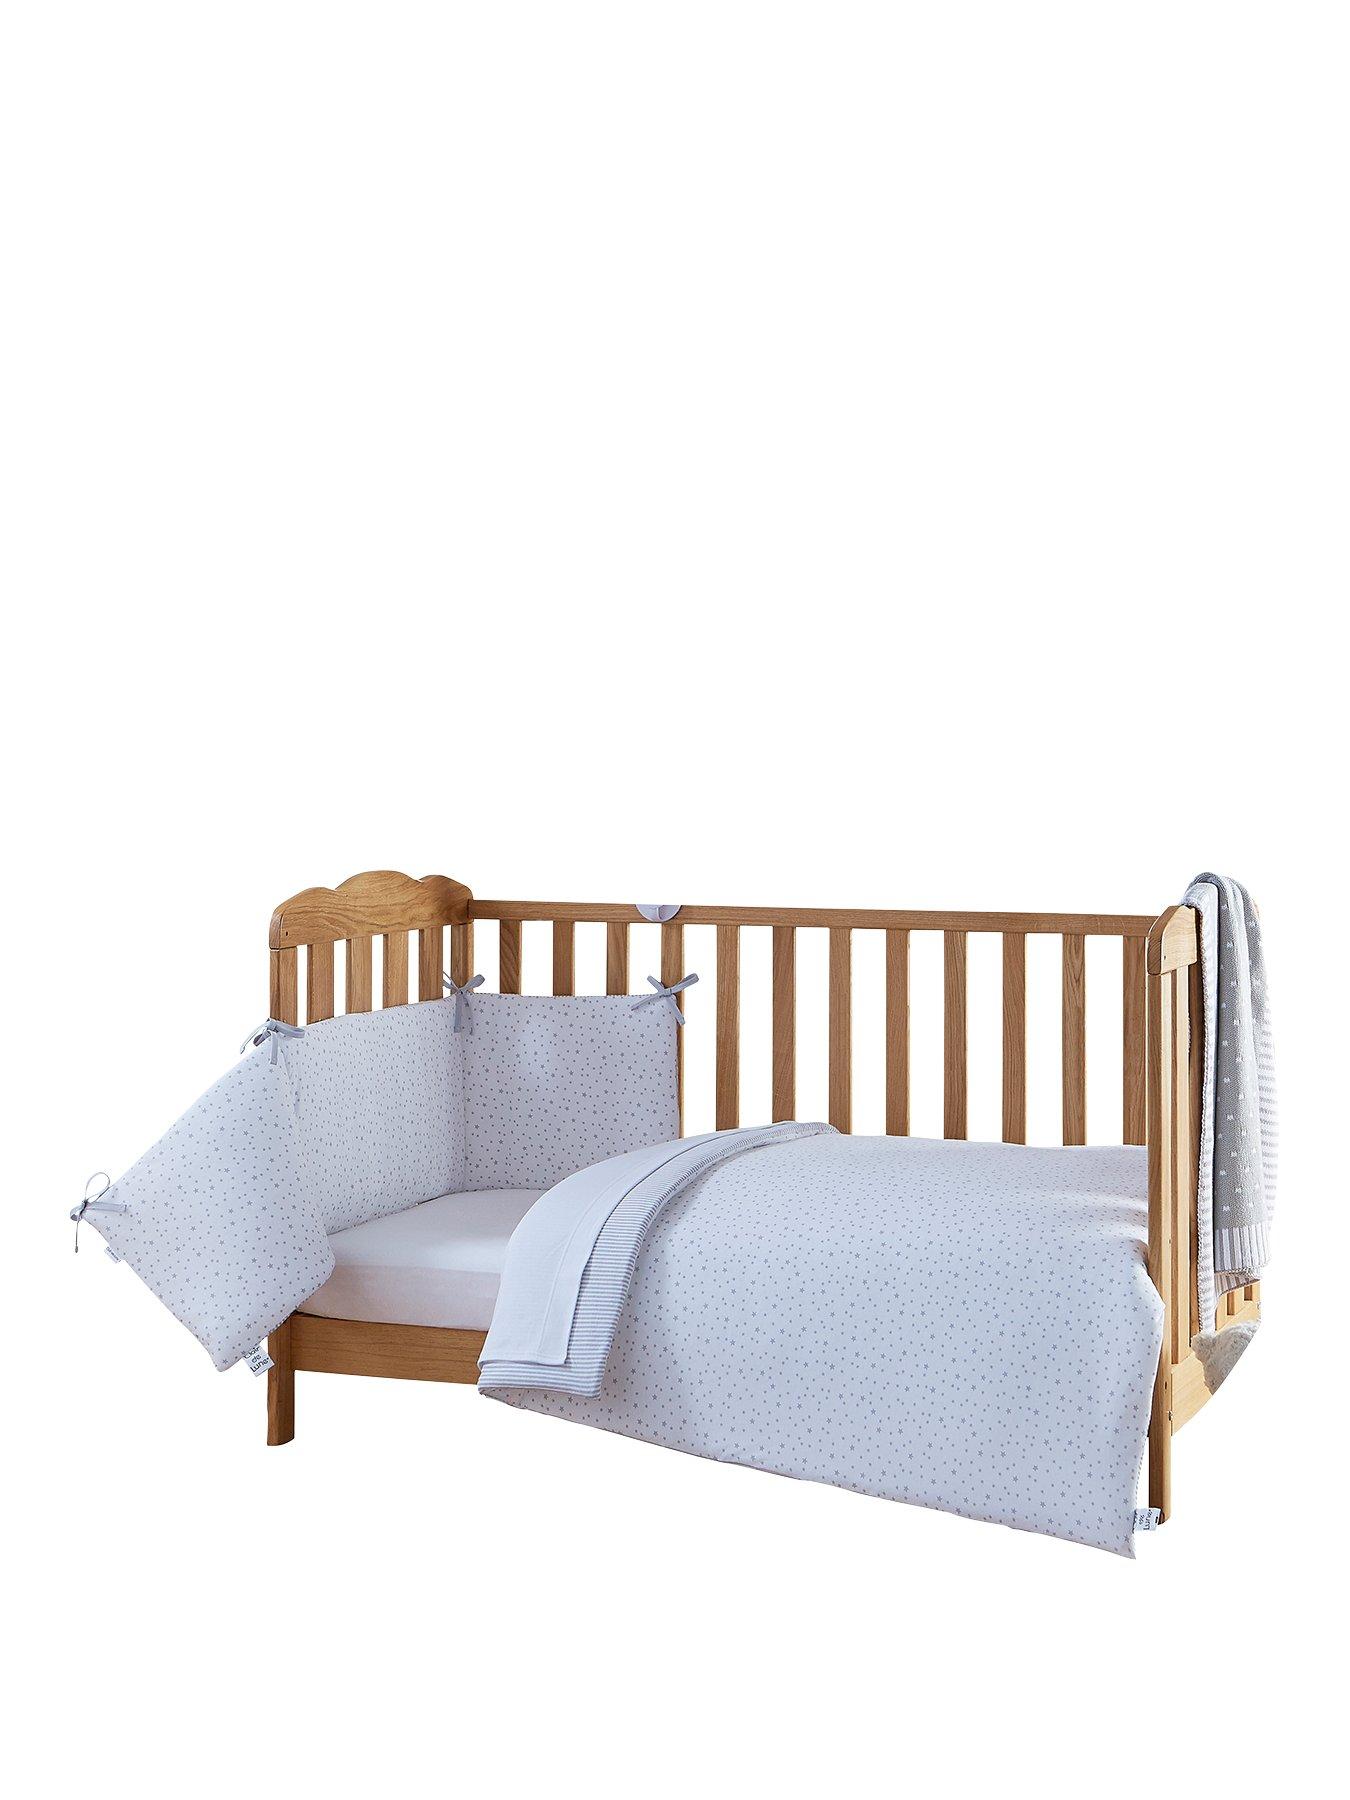 cot bed bedding sets